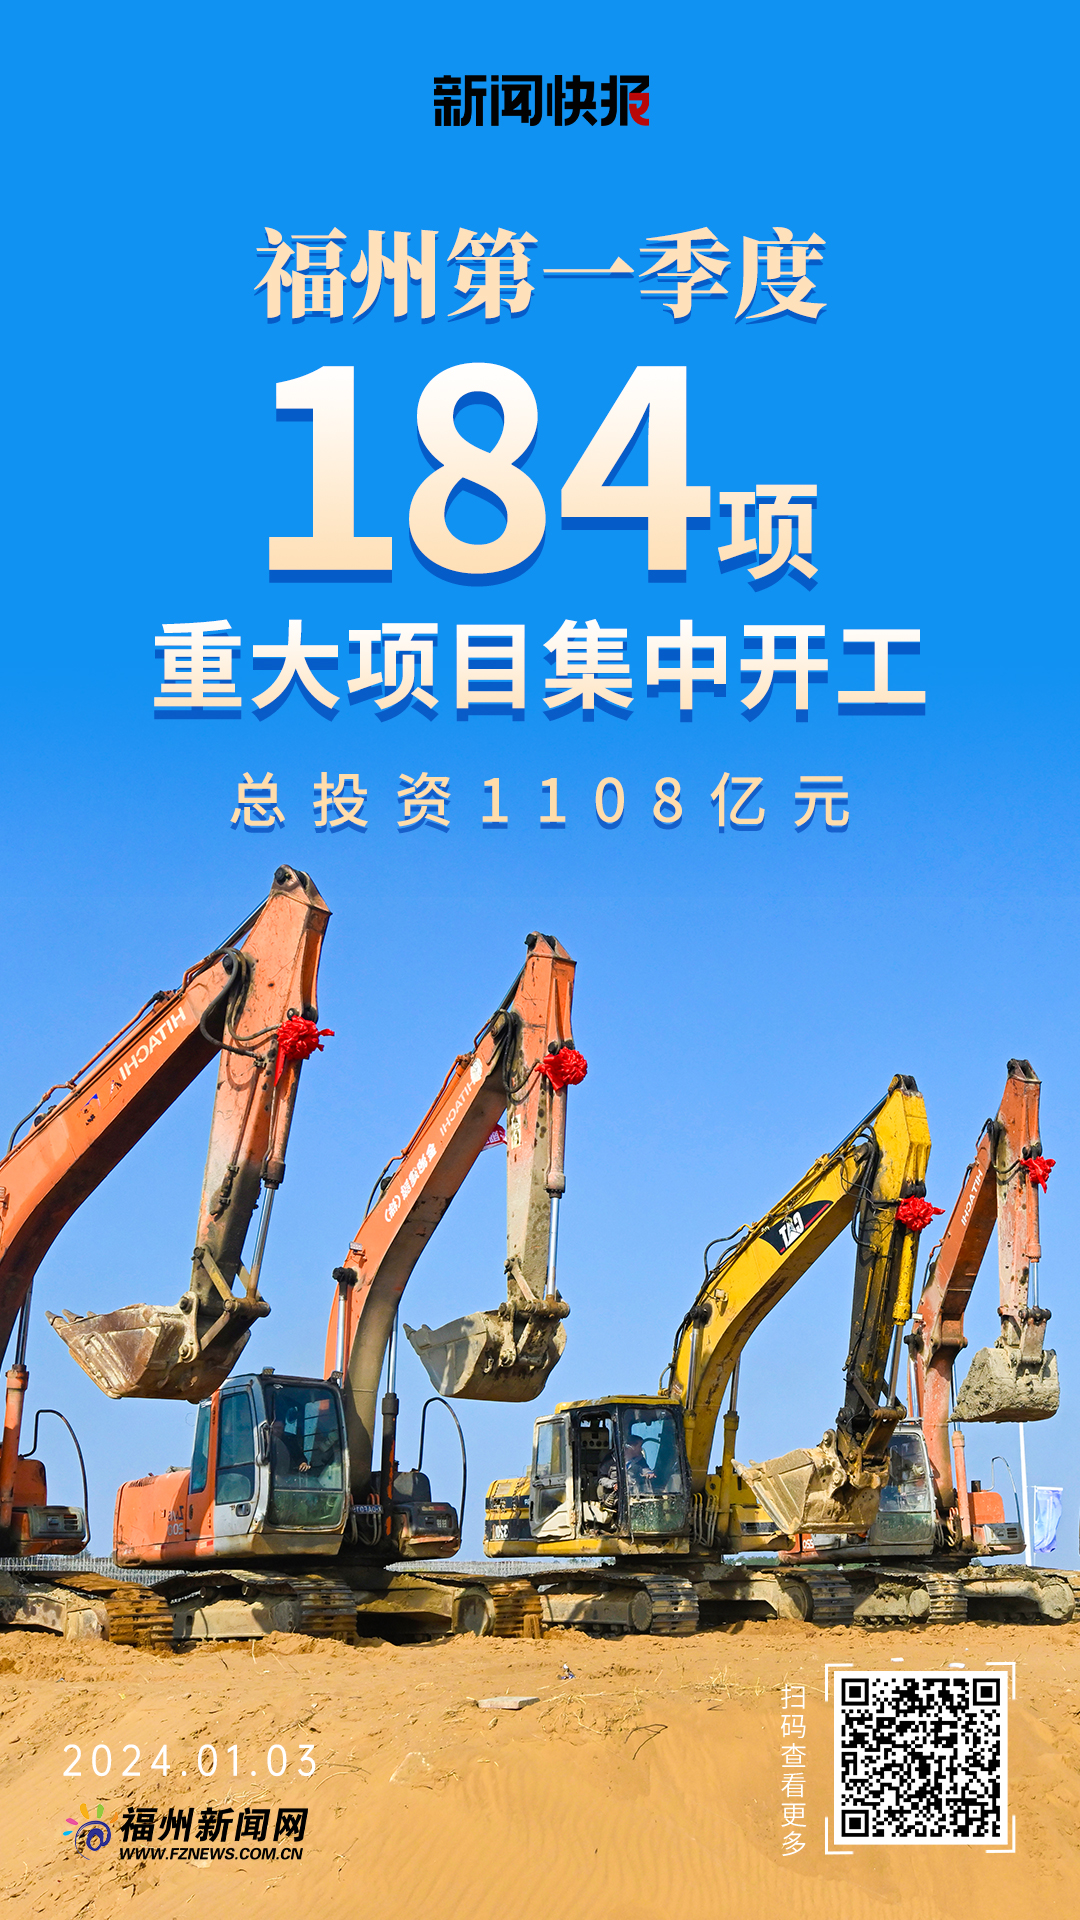 福州第一季度集中开工184项重大项目 总投资1108亿元